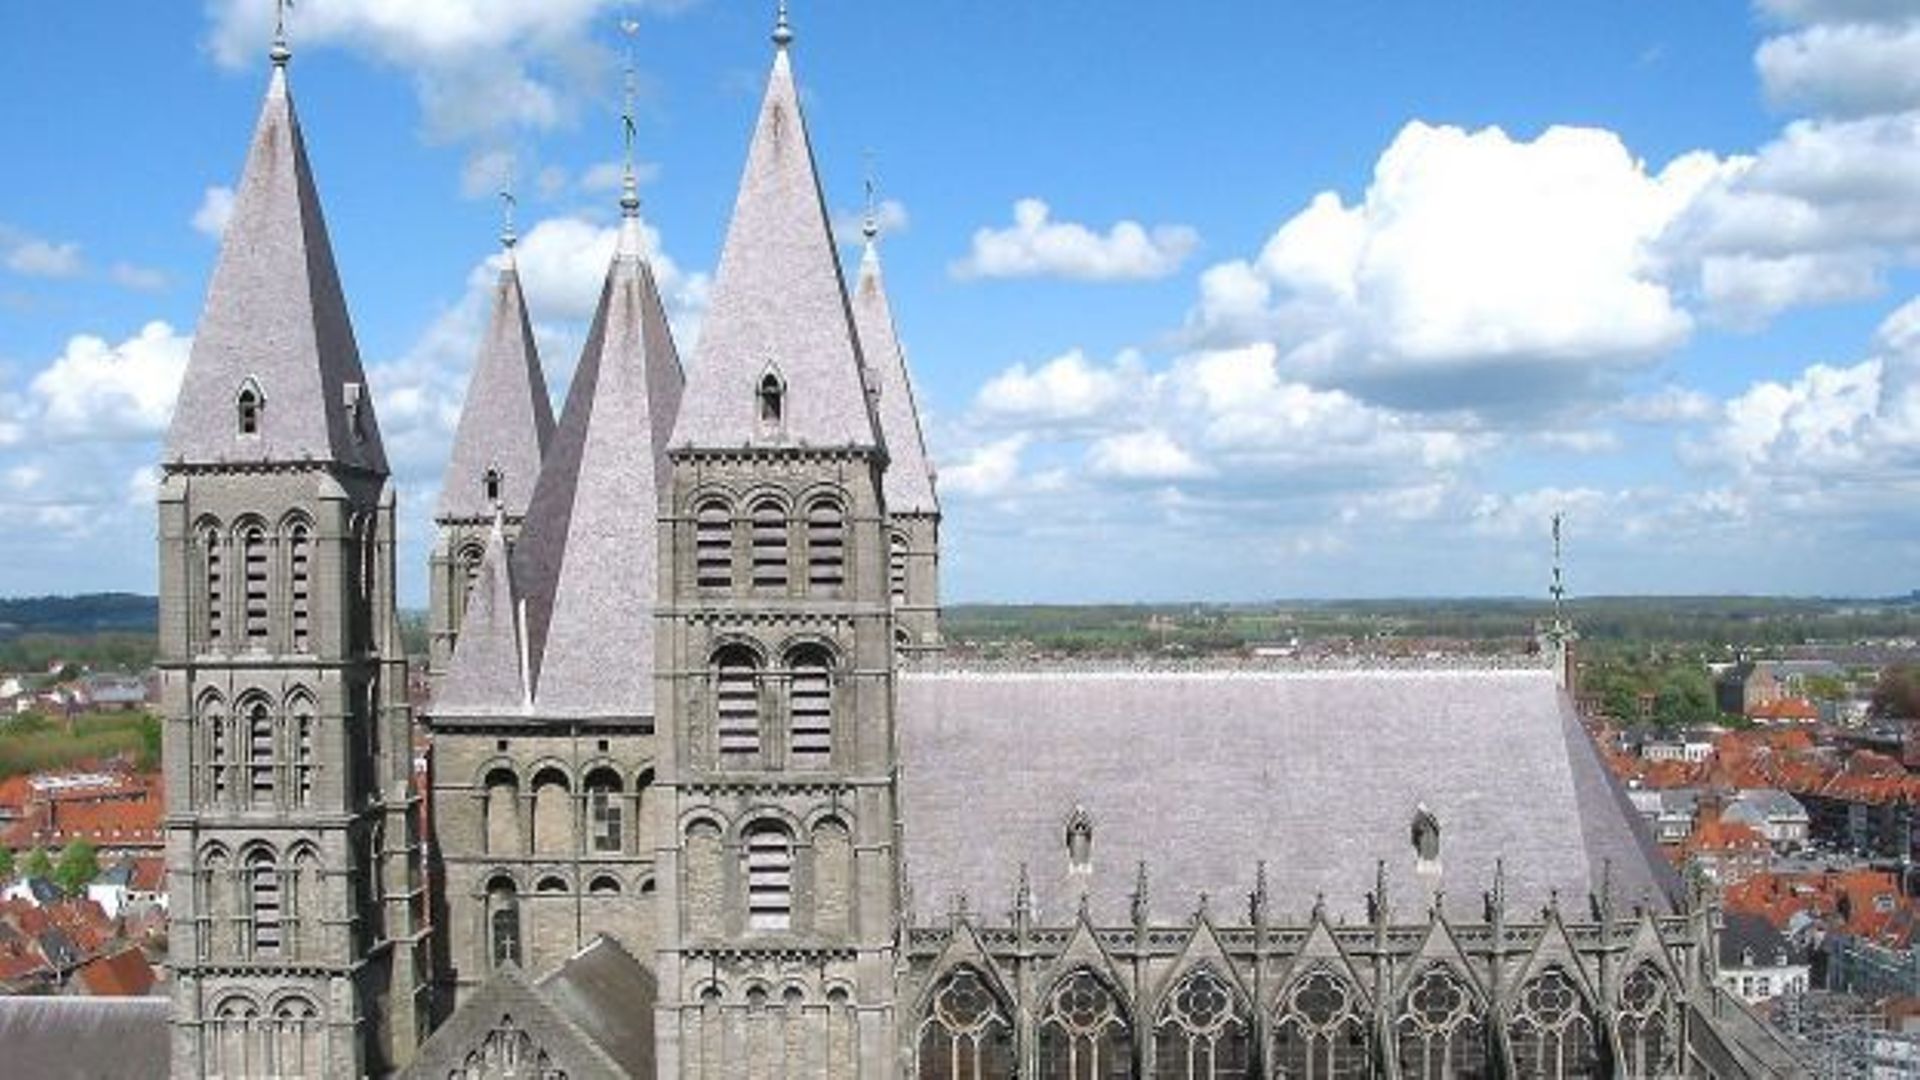 Les cinq tours romanes /choeur gothique de la cathédrale Notre-Dame